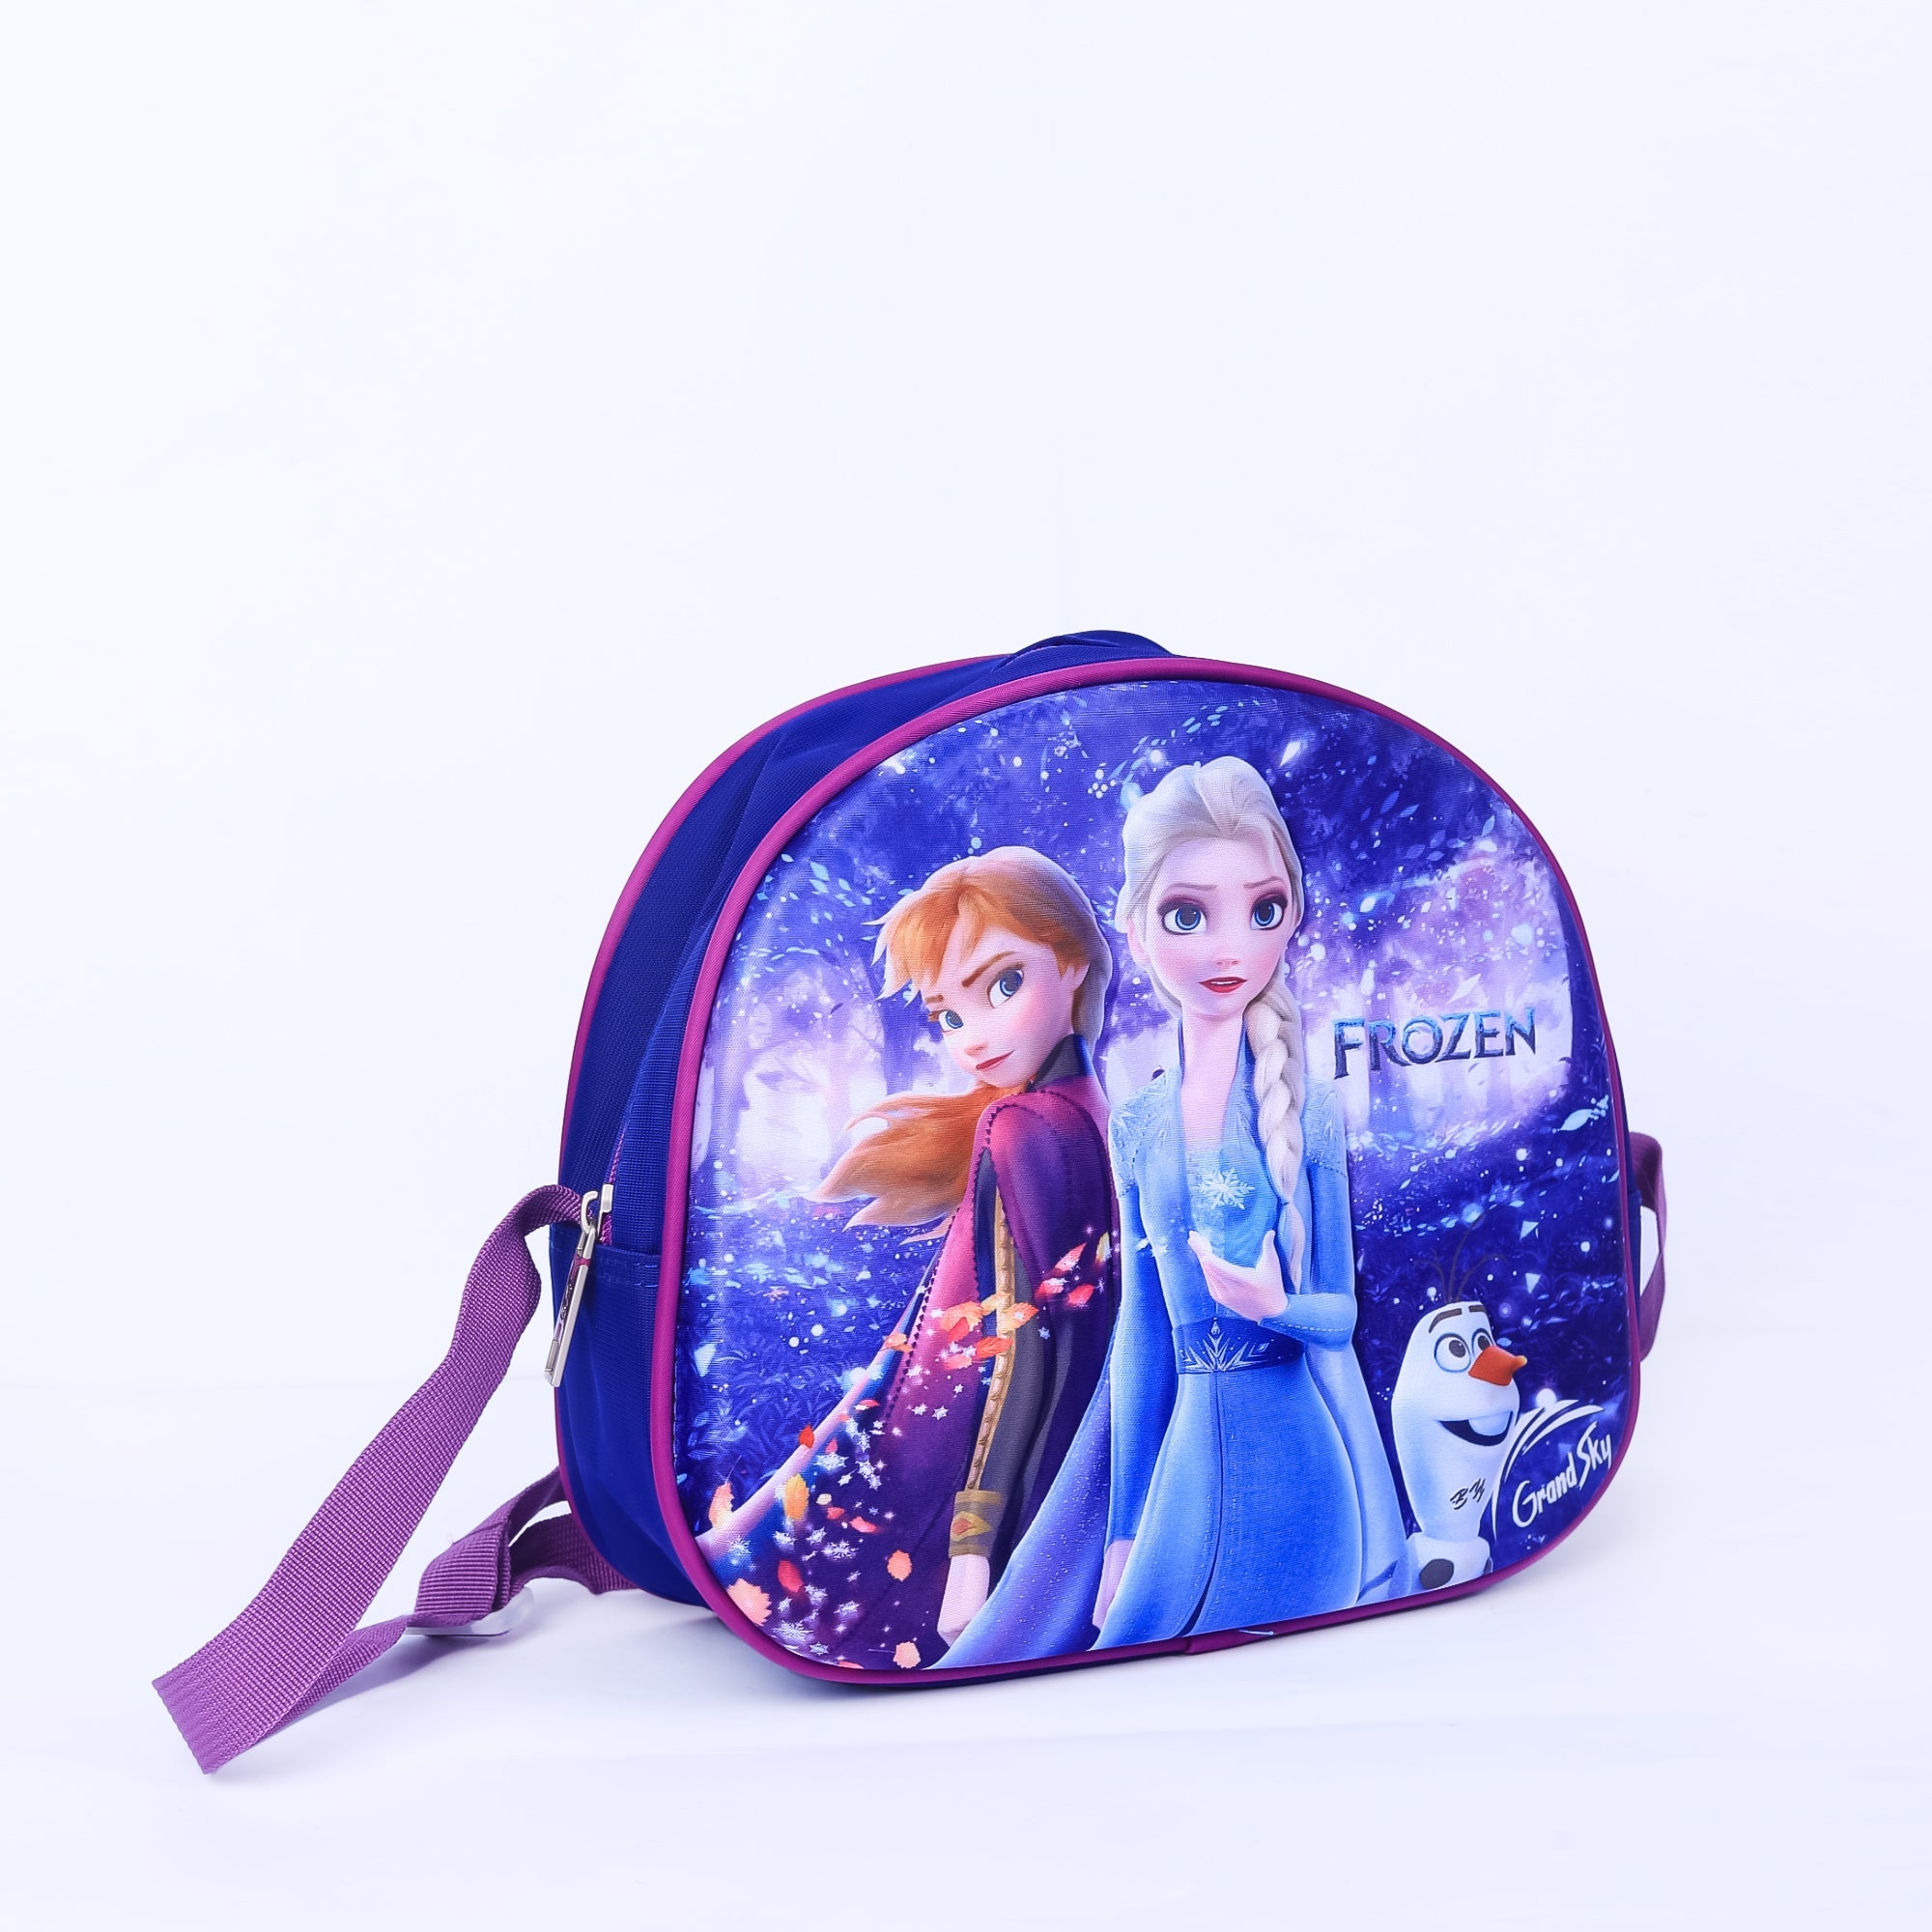 Frozen Trolly Bag For Kids 17 INCH